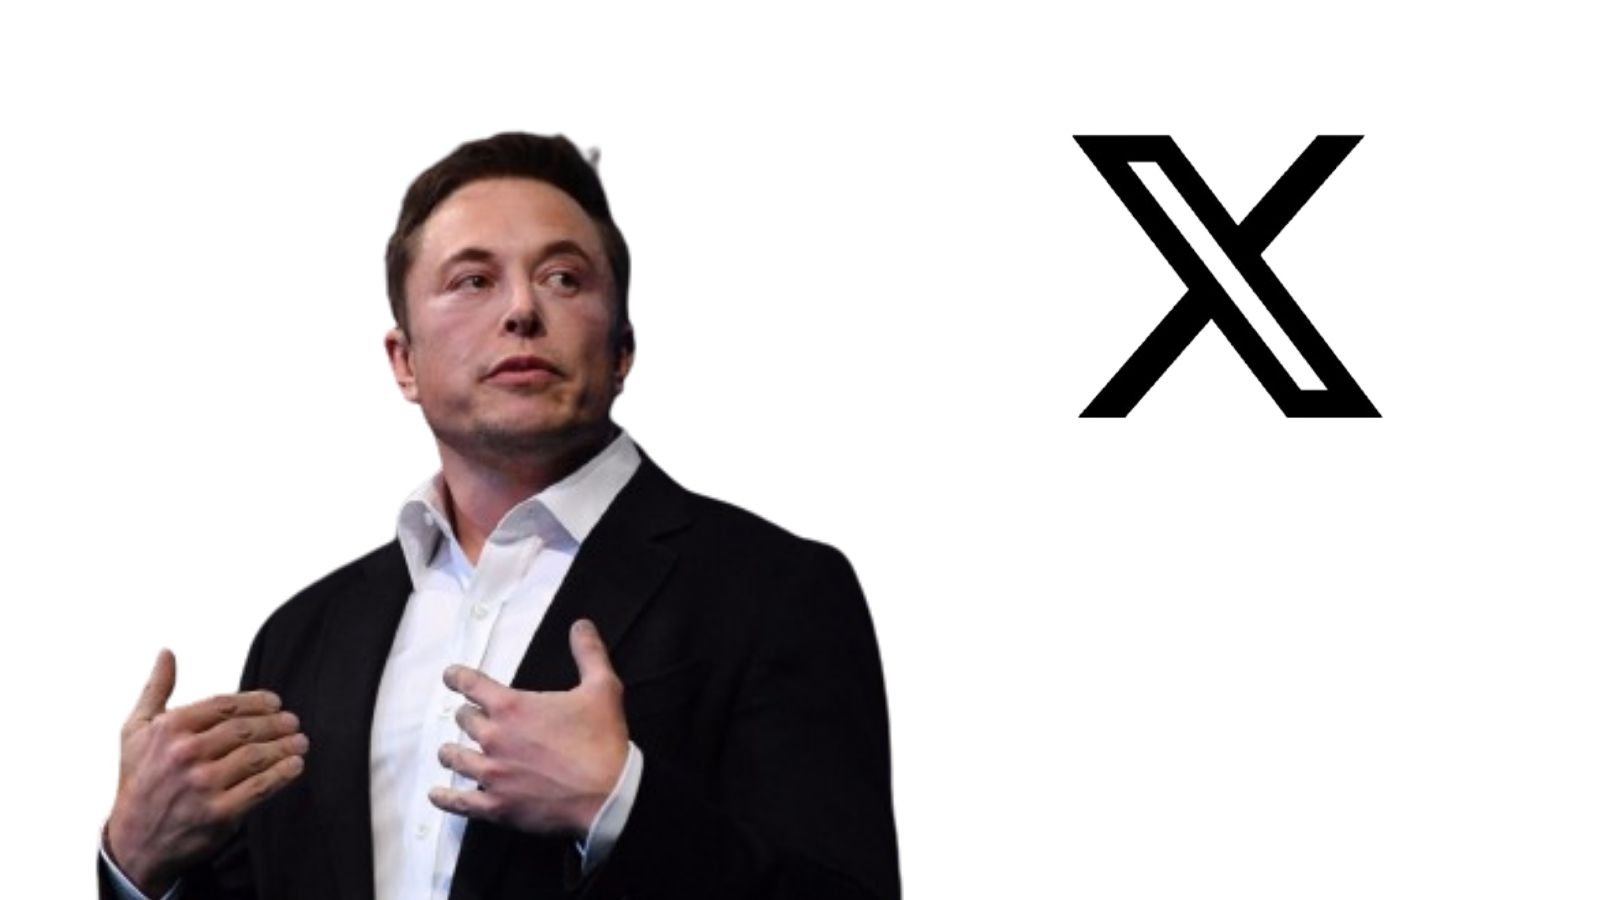 X platformunun sahibi Elon Musk’ın, sosyal medya arenasında dikkatleri üzerine çeken X, sektördeki yenilikçi adımlarına bir yenisini daha hanesine ekleyecek.